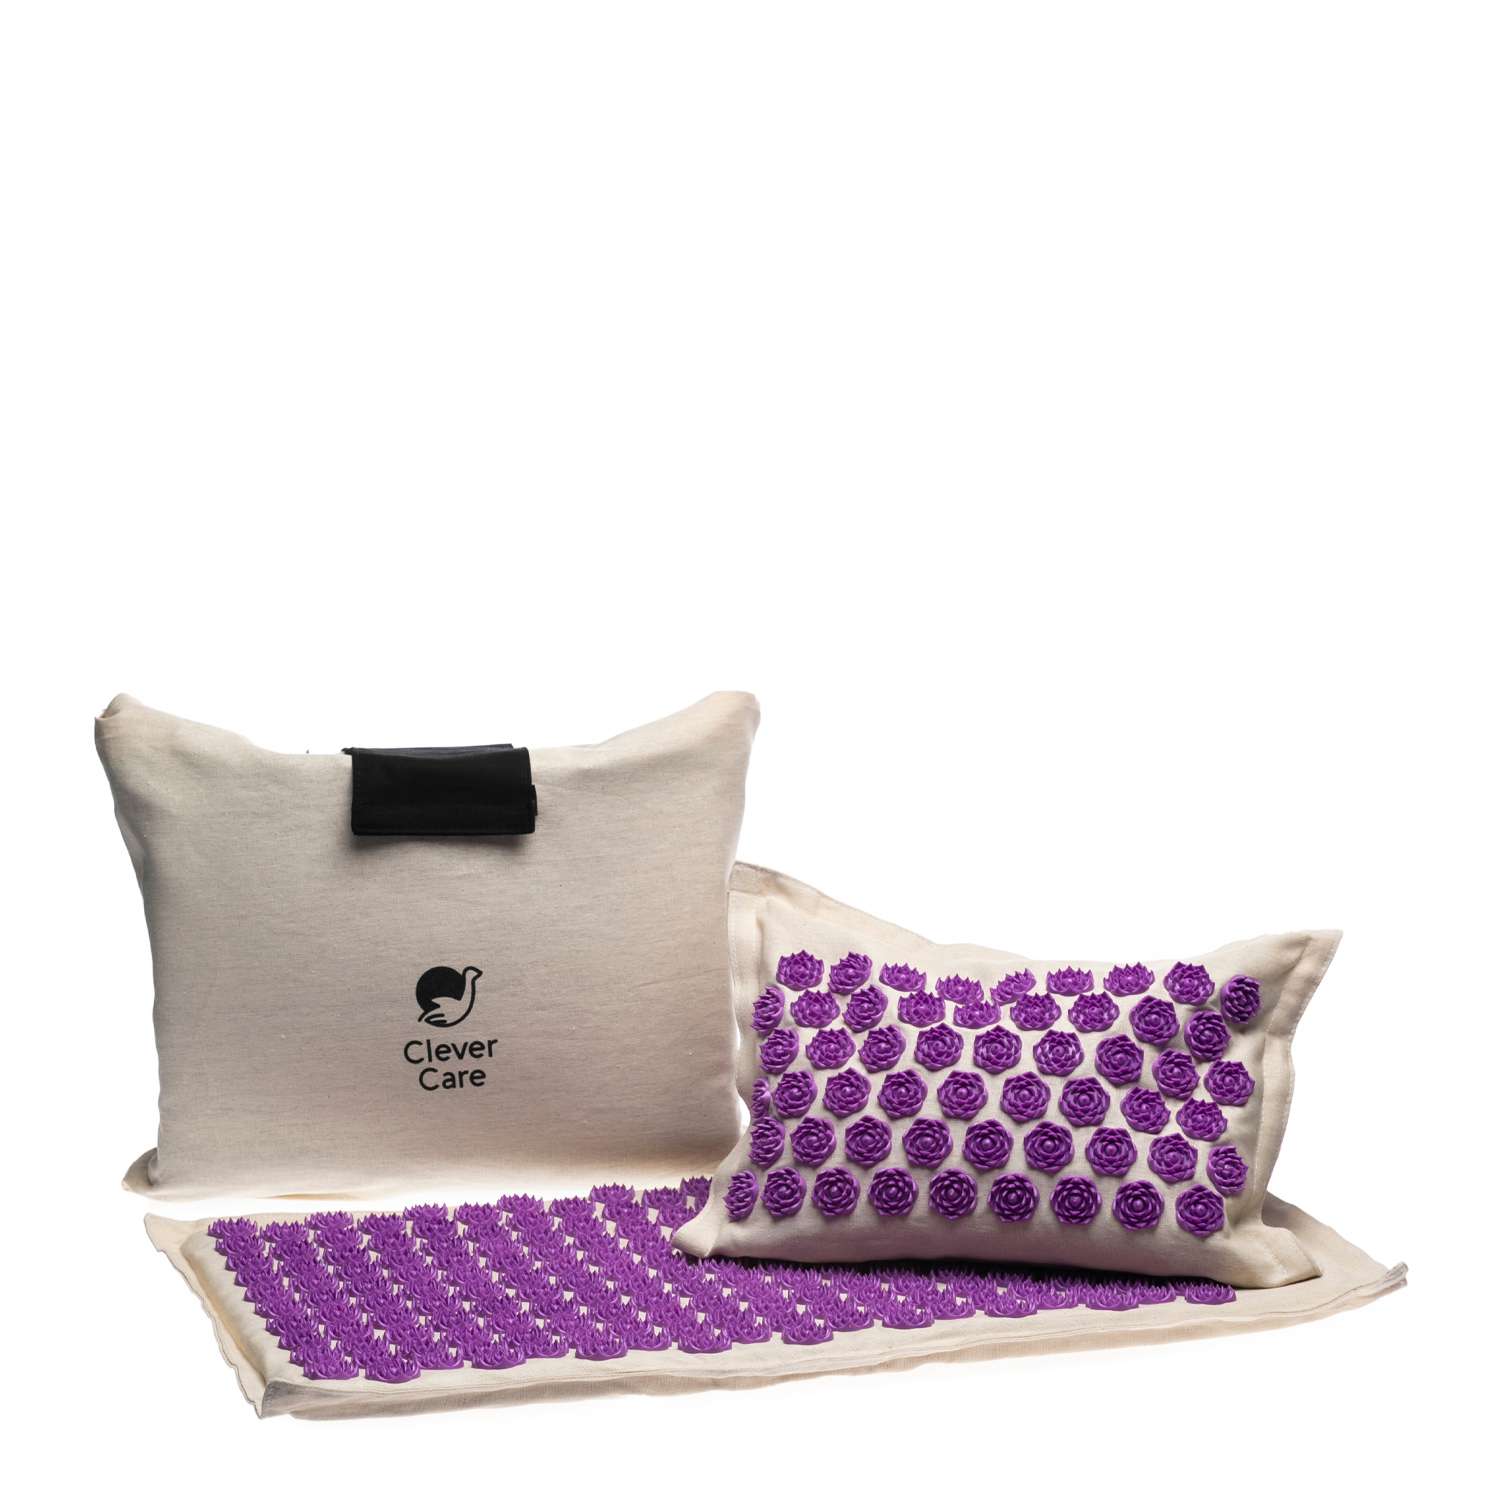 Набор: коврик и подушка CleverCare акупунктурные с сумкой для хранения и переноски цвет бежевый с сиреневым - фото 1